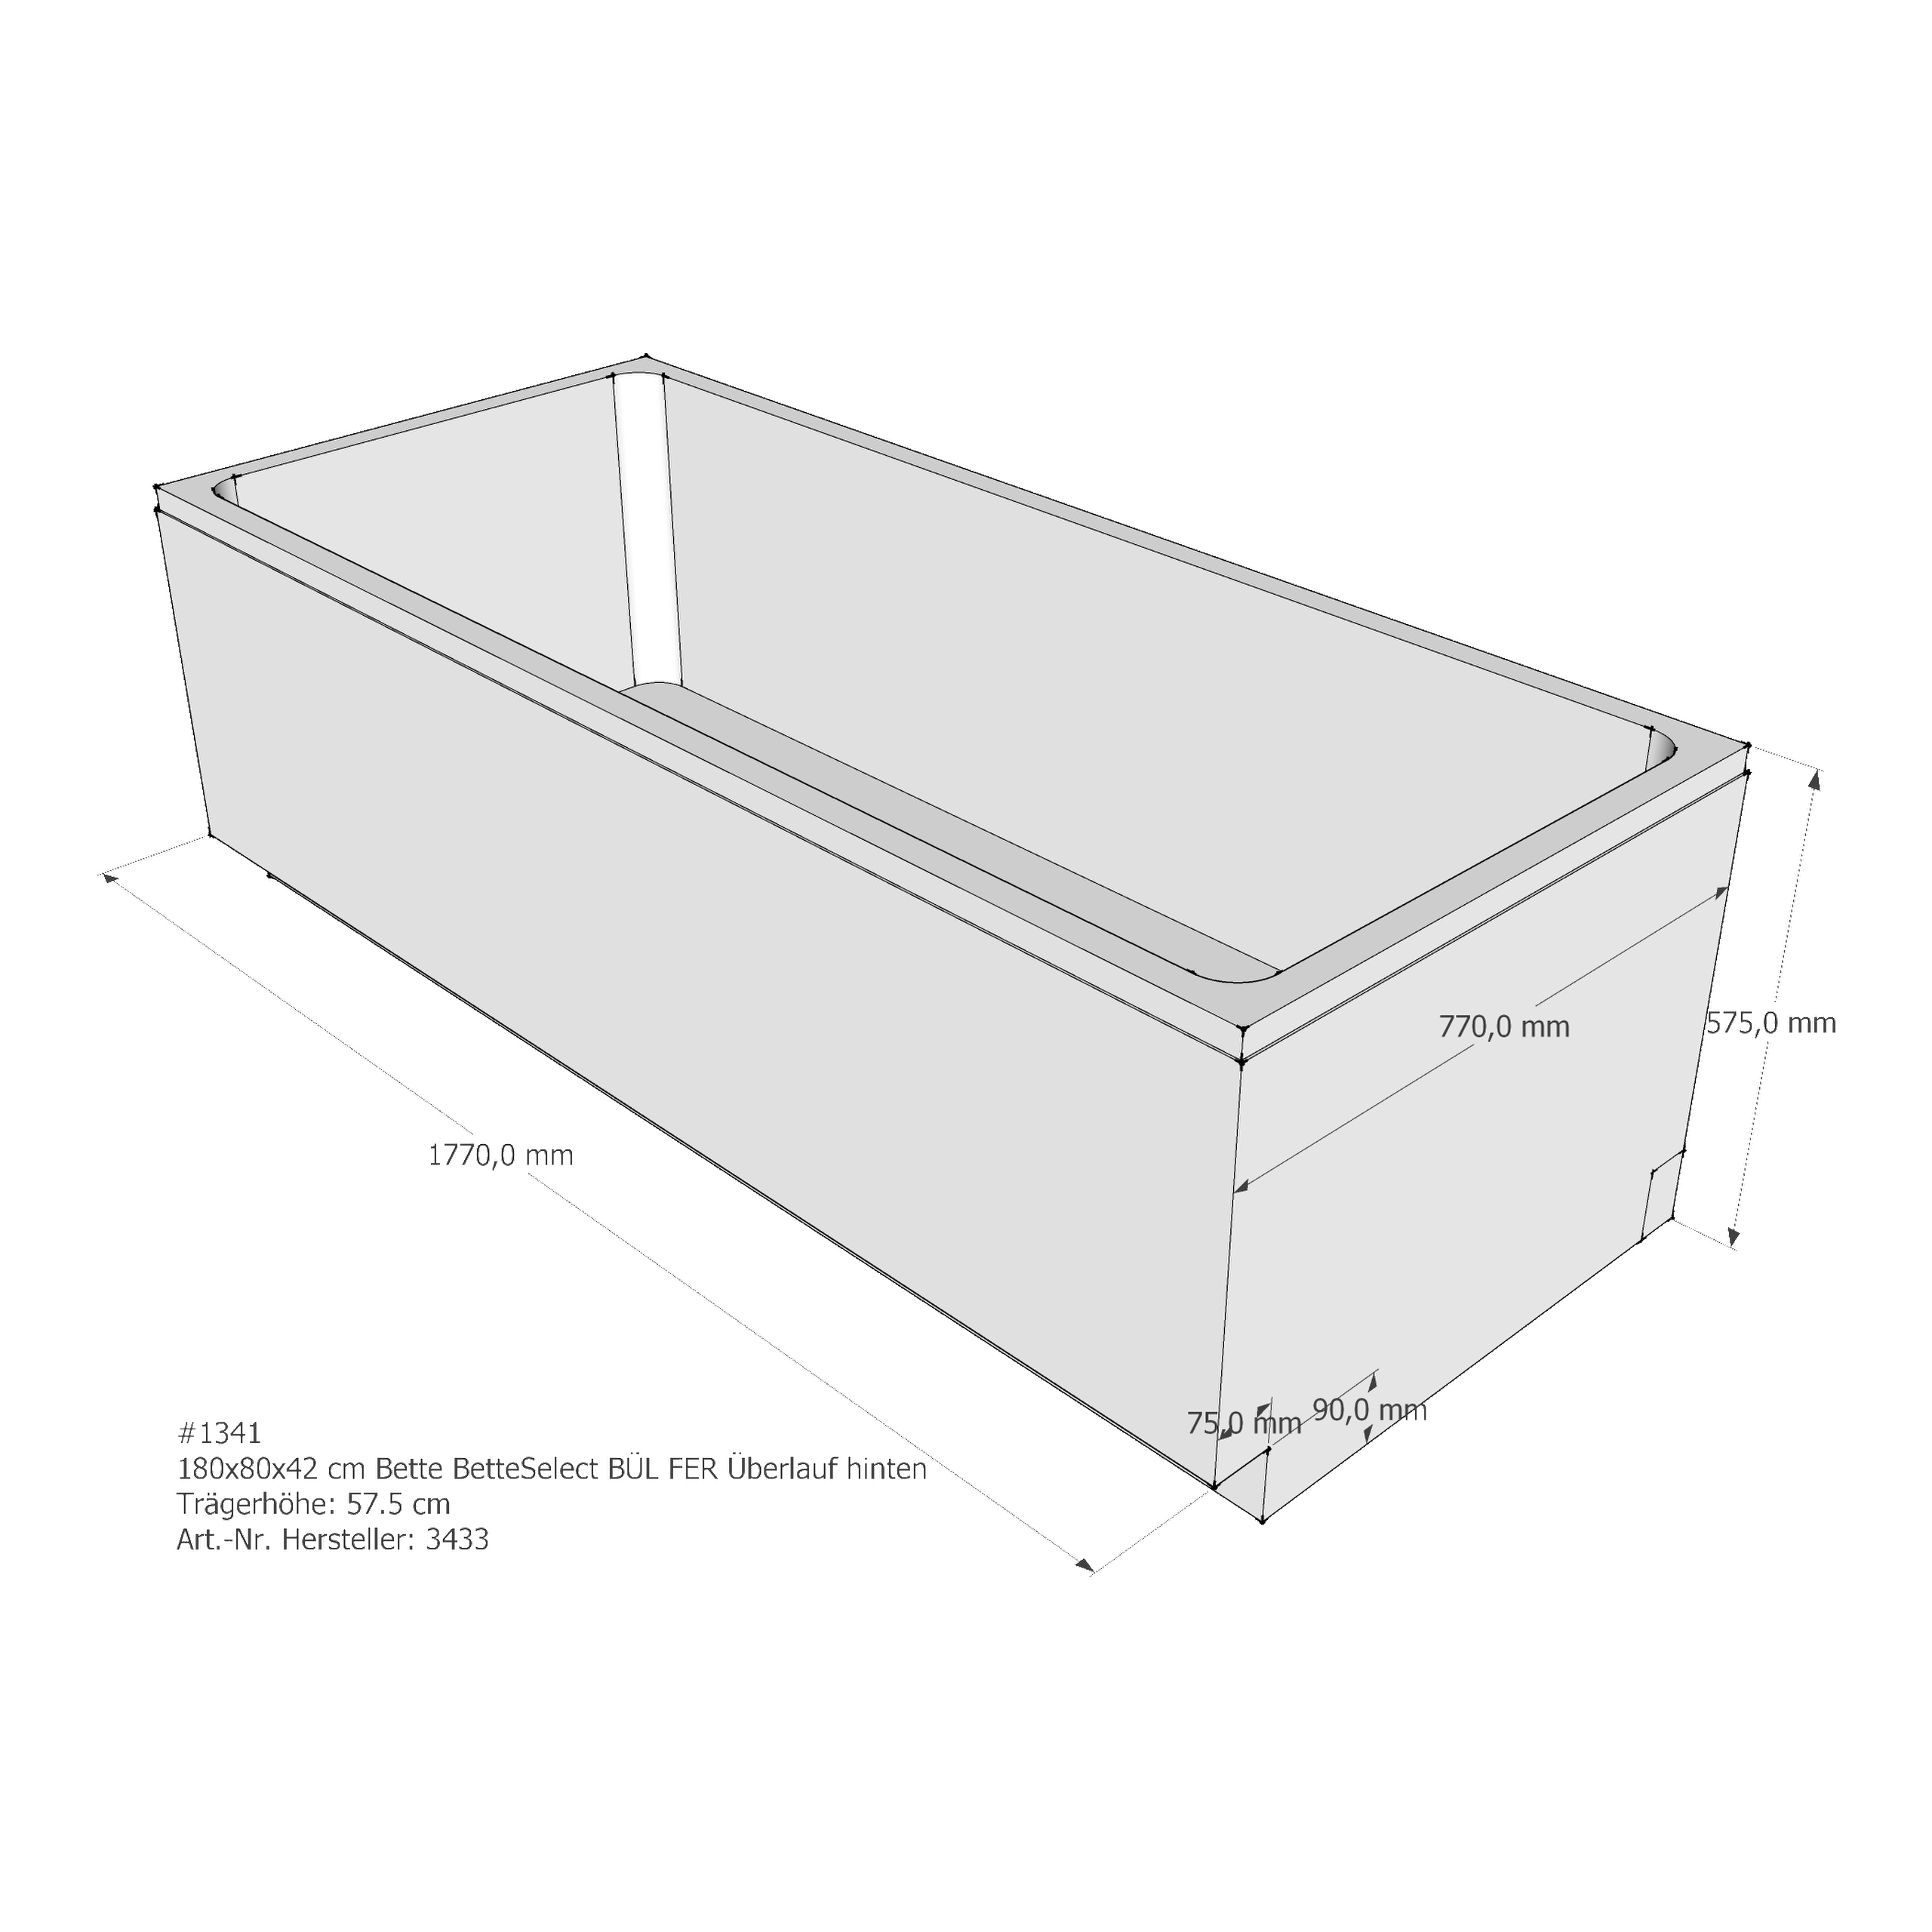 Badewannenträger für Bette BetteSelect 180 × 80 × 42 cm